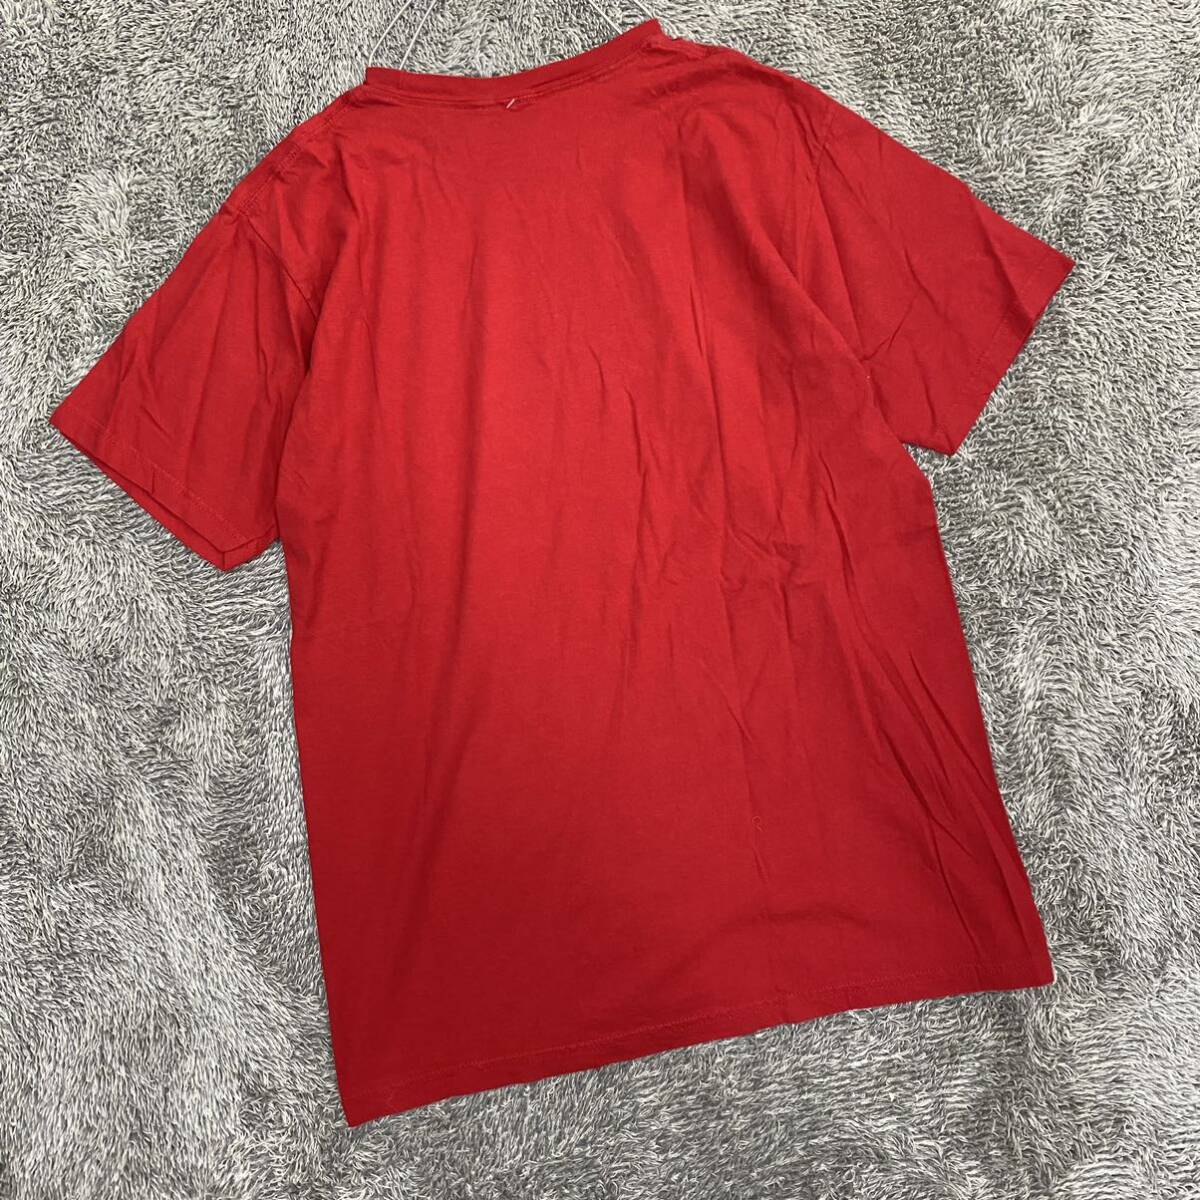 VINTAGE ヴィンテージ JOKOY.COM Tシャツ 半袖カットソー サイズXL レッド 赤 メンズ トップス 最落なし （X18）の画像2